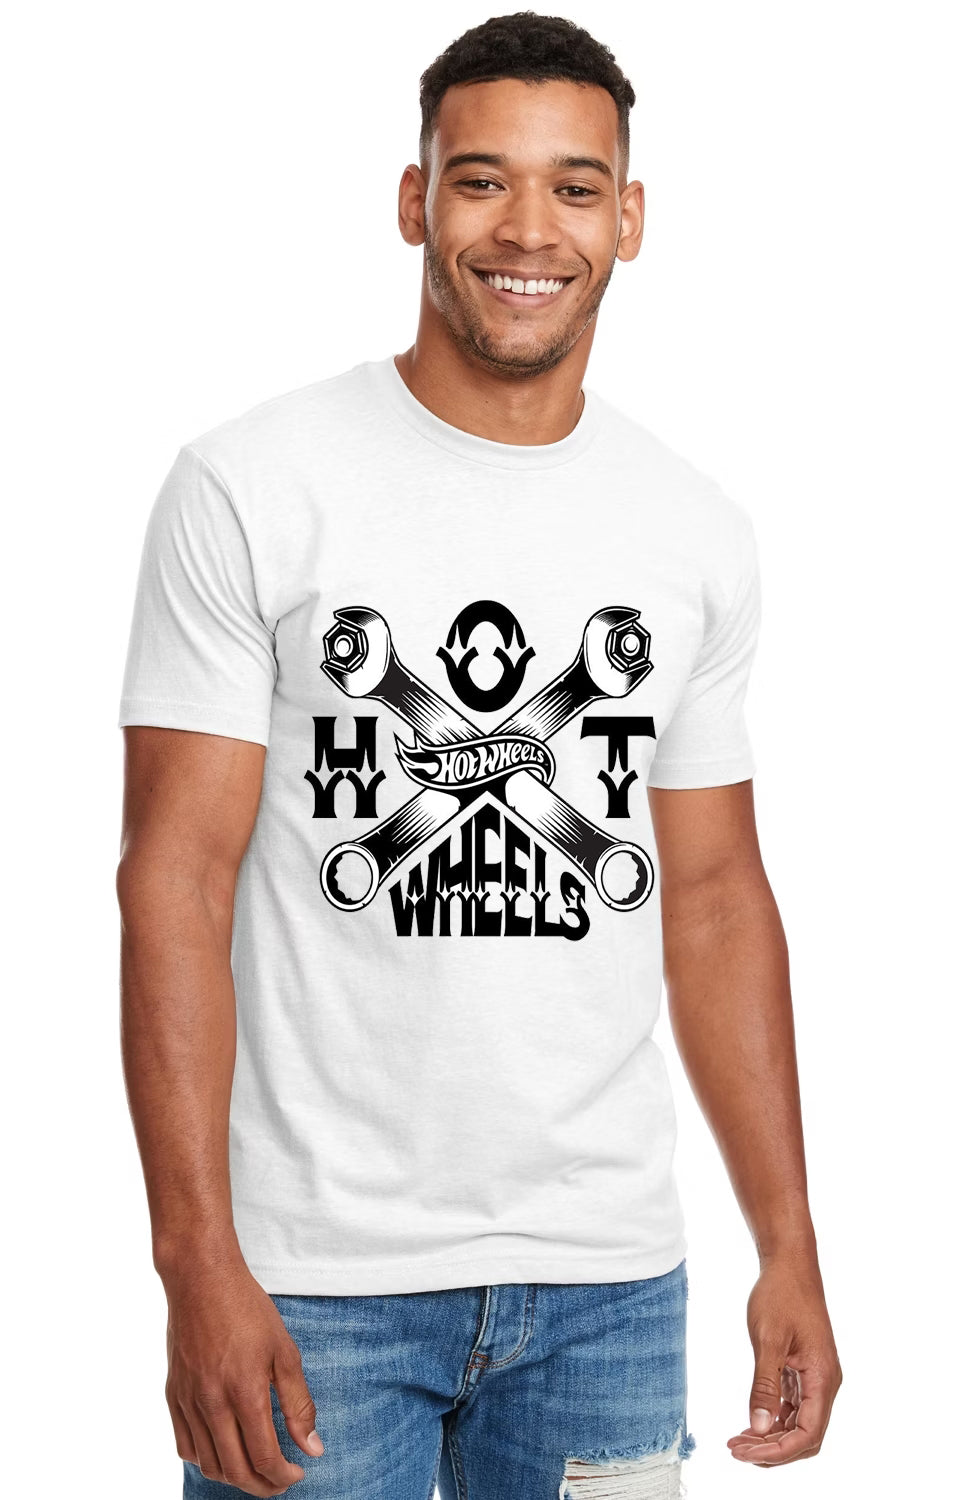 Hot Wheels Wrenching Shirt